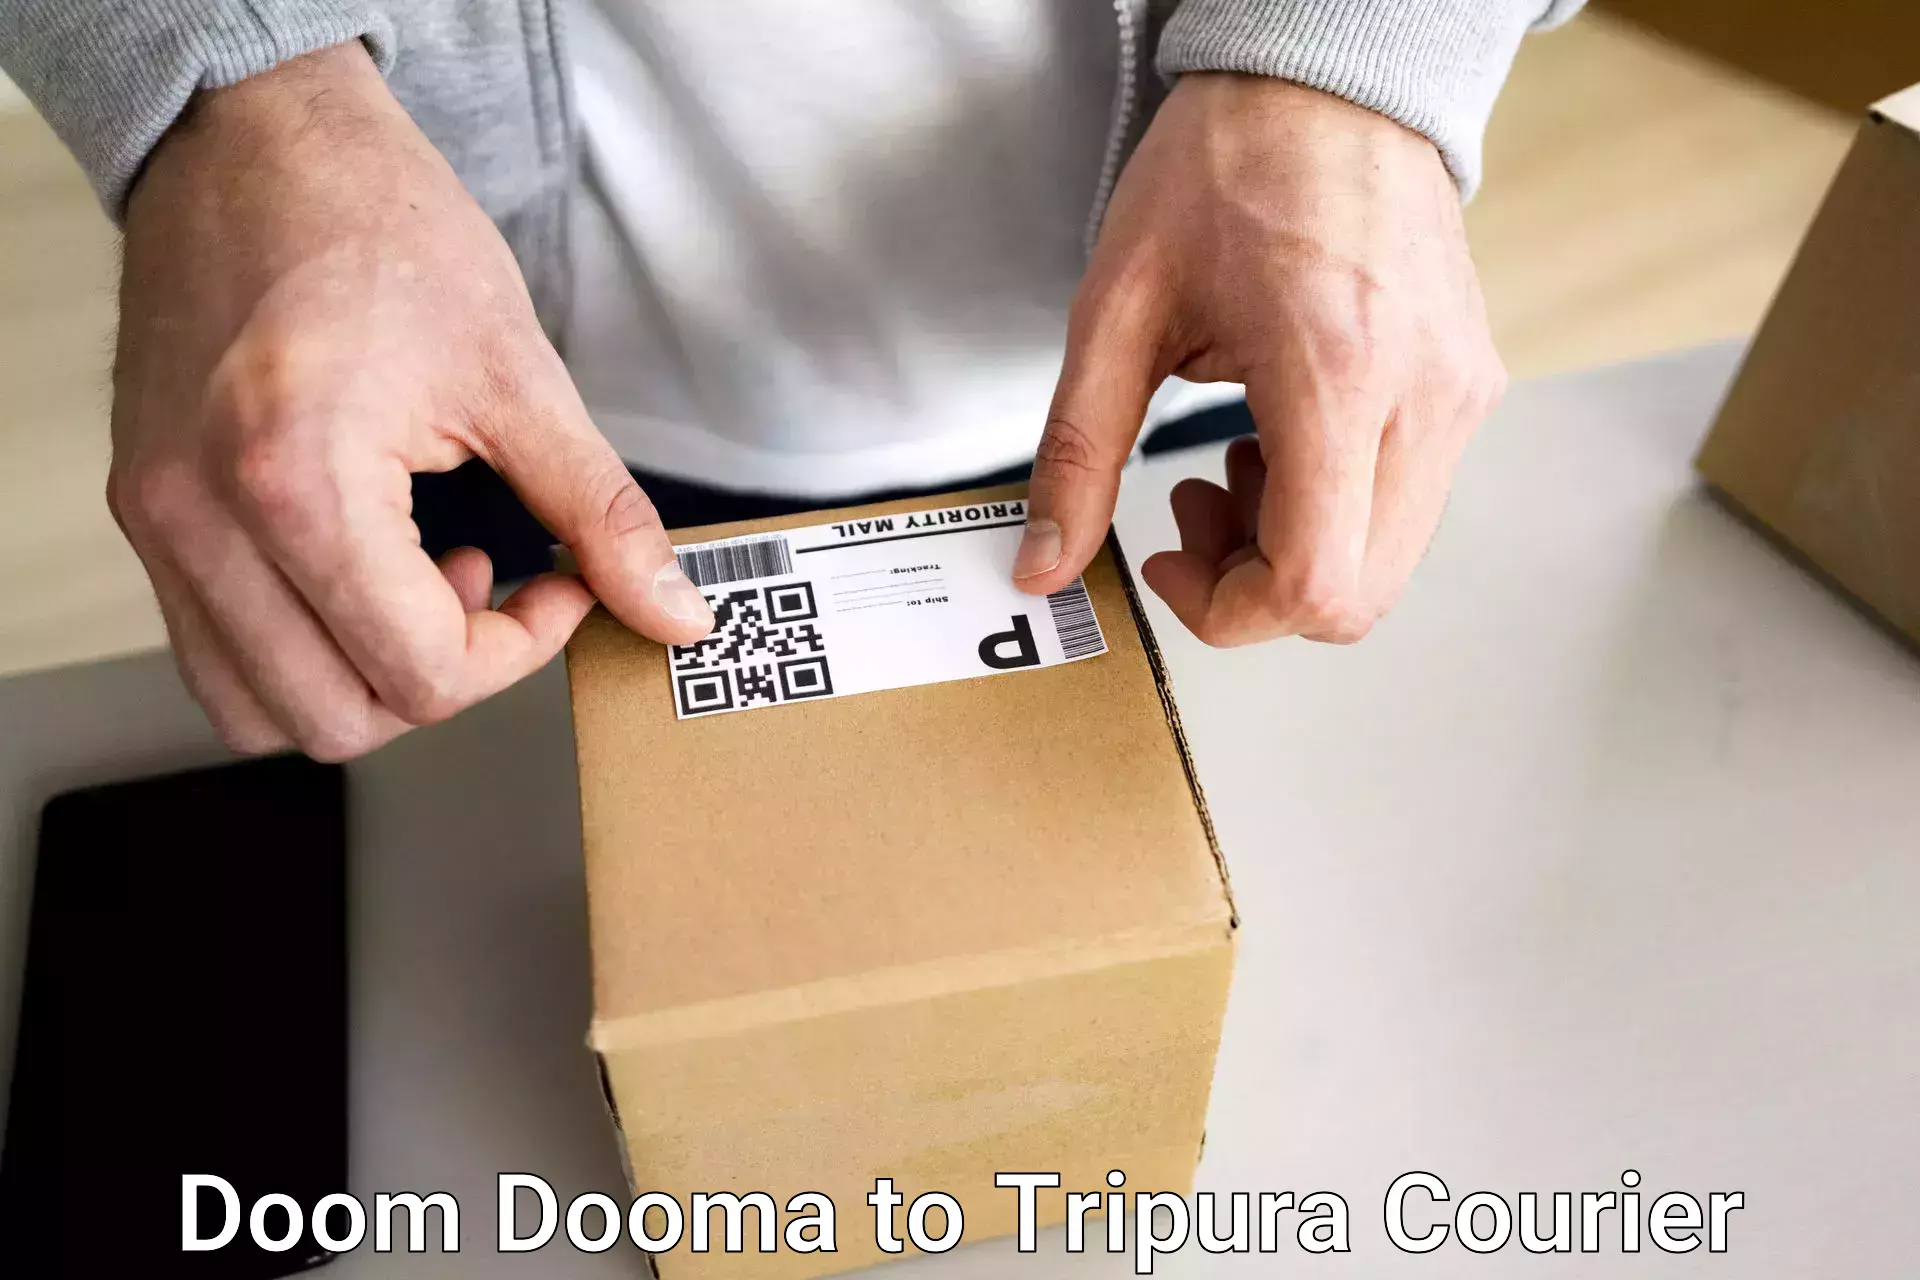 Door-to-door baggage service Doom Dooma to North Tripura